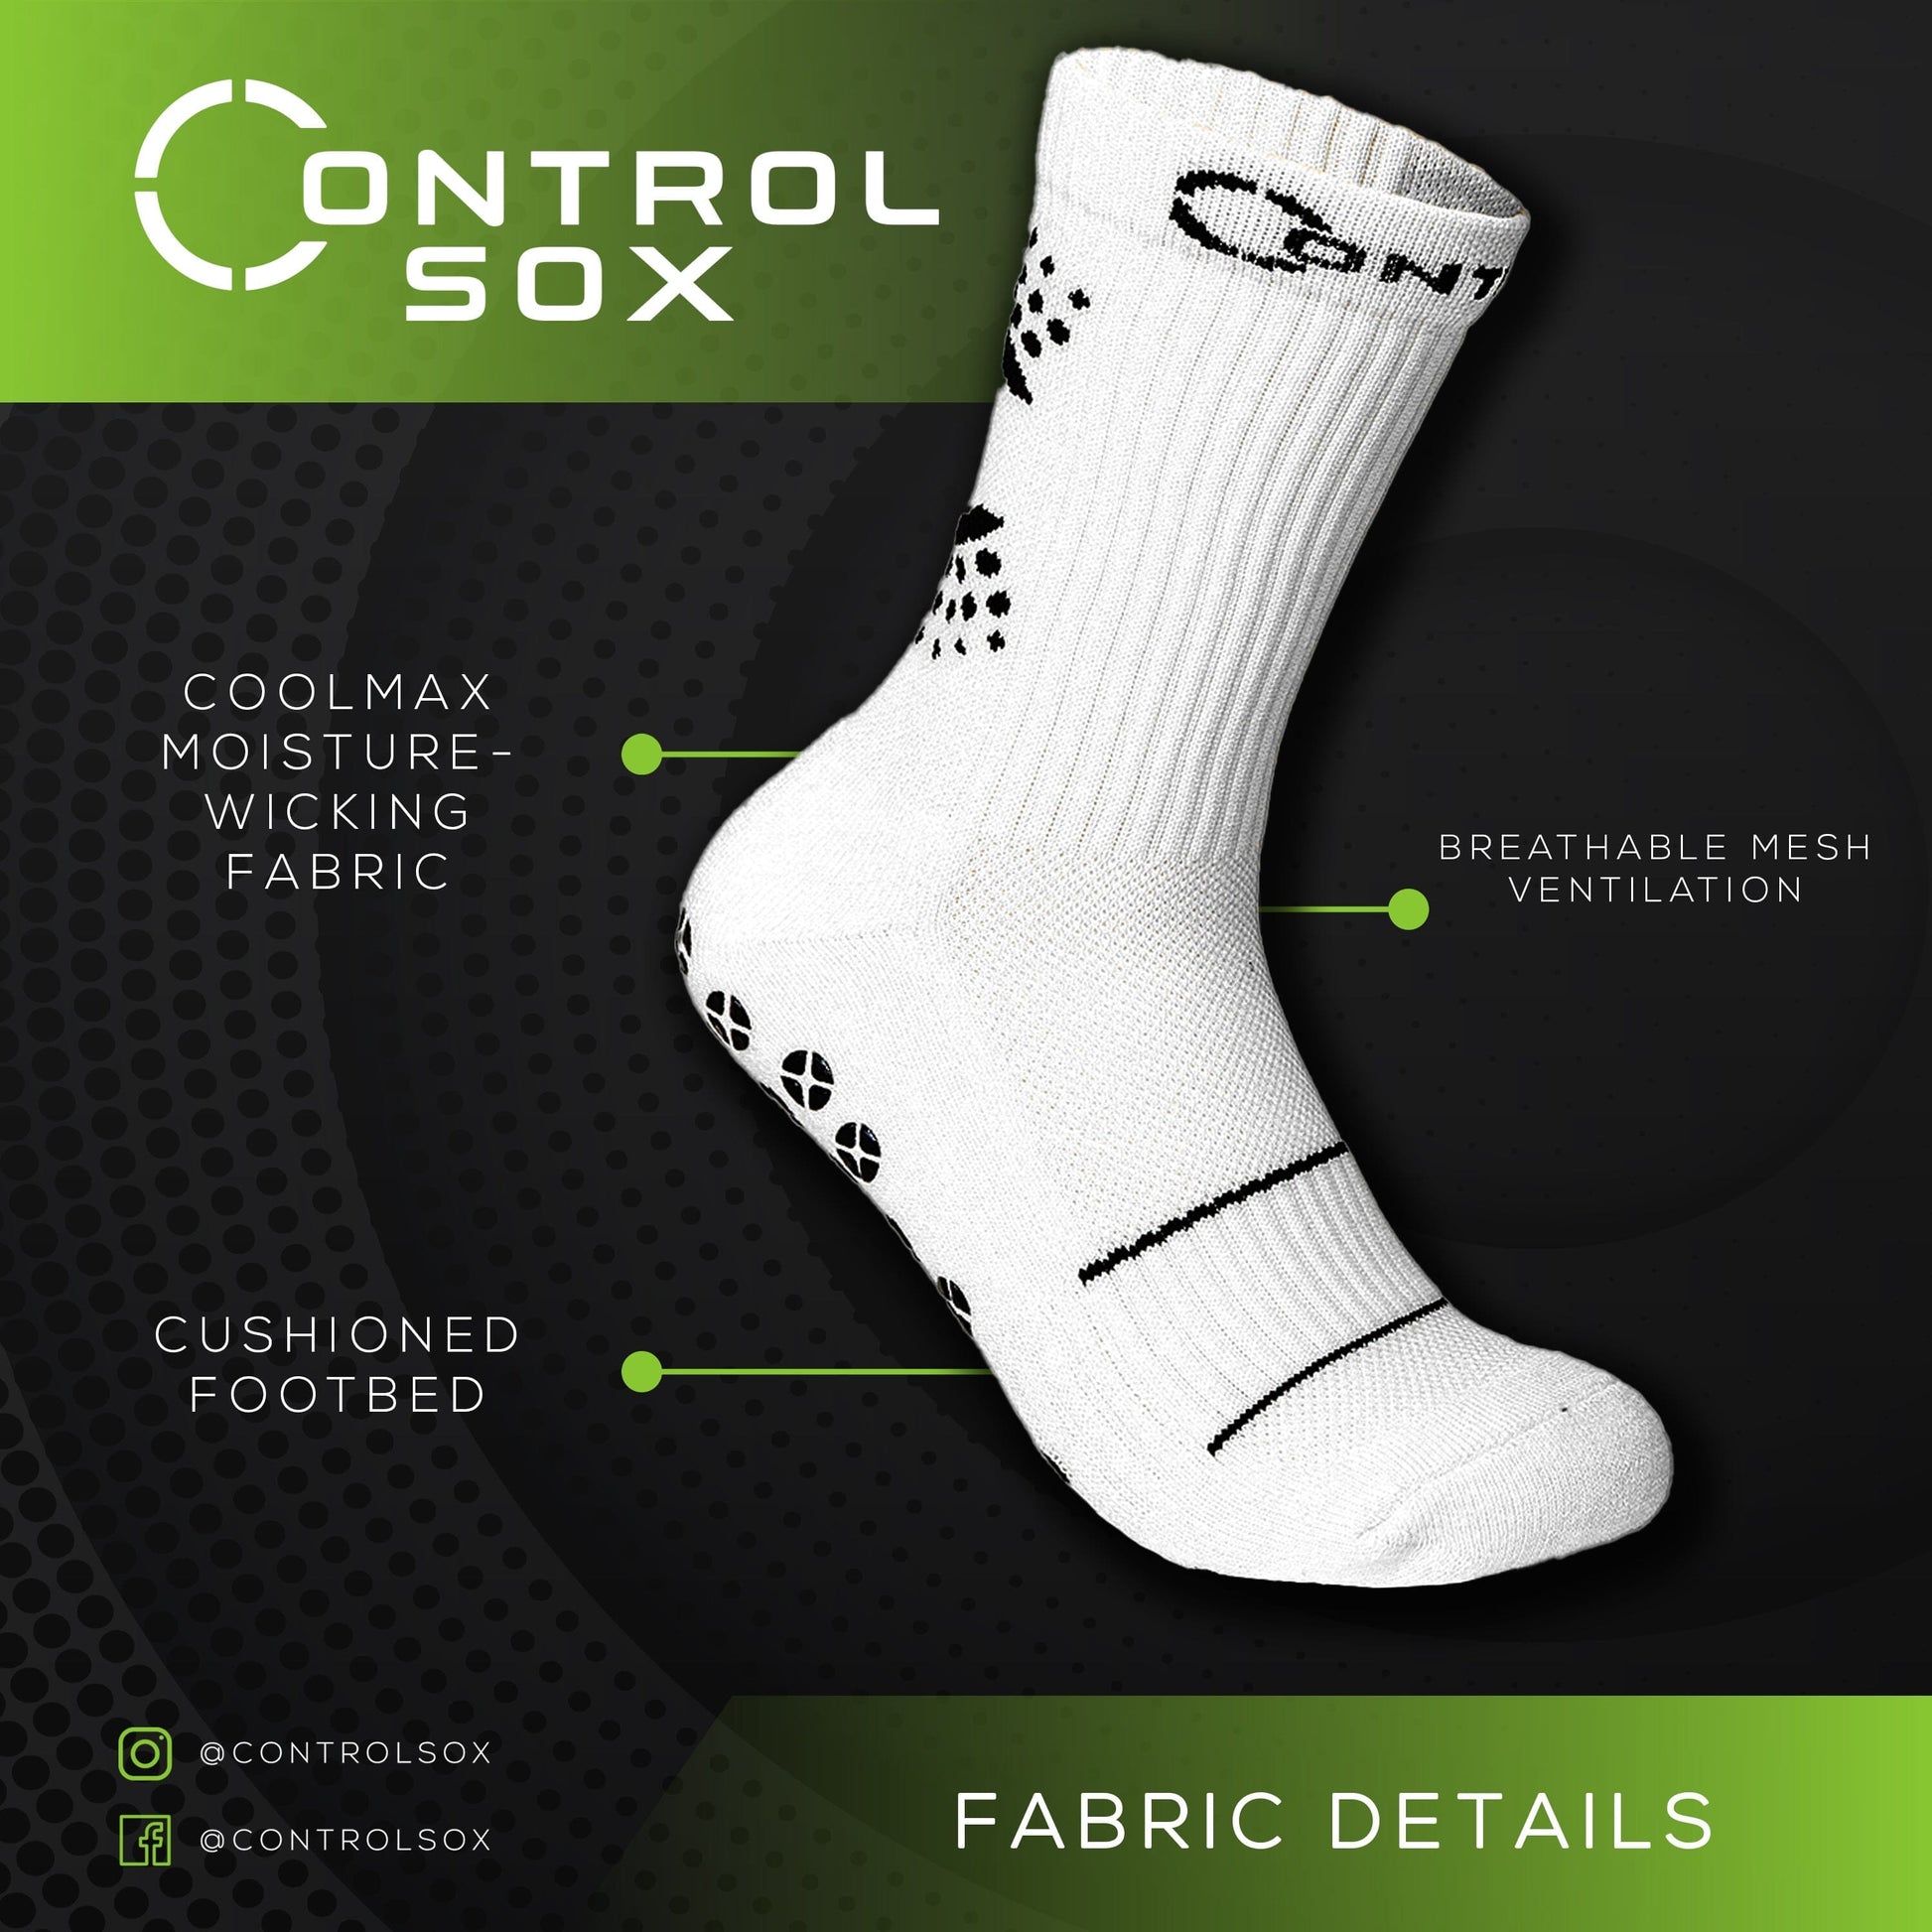 https://controlsox.com/cdn/shop/products/control-sox-20-grip-socks-control-sox-555955.jpg?v=1694203254&width=1946